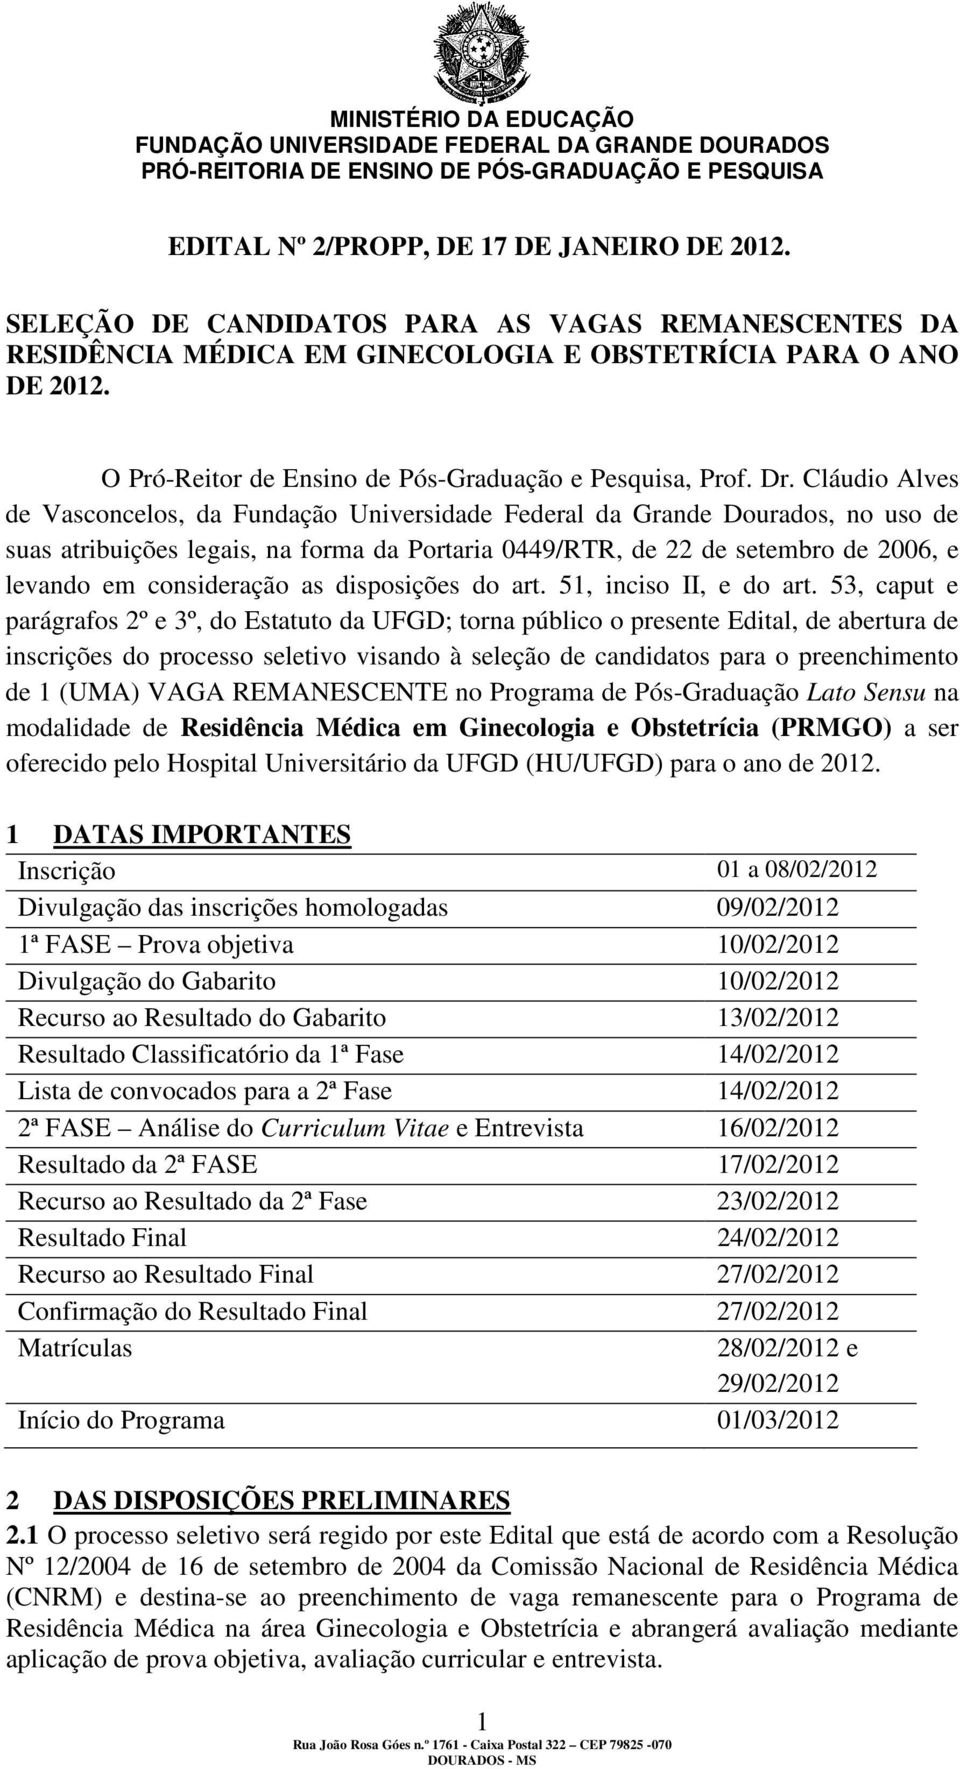 Cláudio Alves de Vasconcelos, da Fundação Universidade Federal da Grande Dourados, no uso de suas atribuições legais, na forma da Portaria 0449/RTR, de 22 de setembro de 2006, e levando em